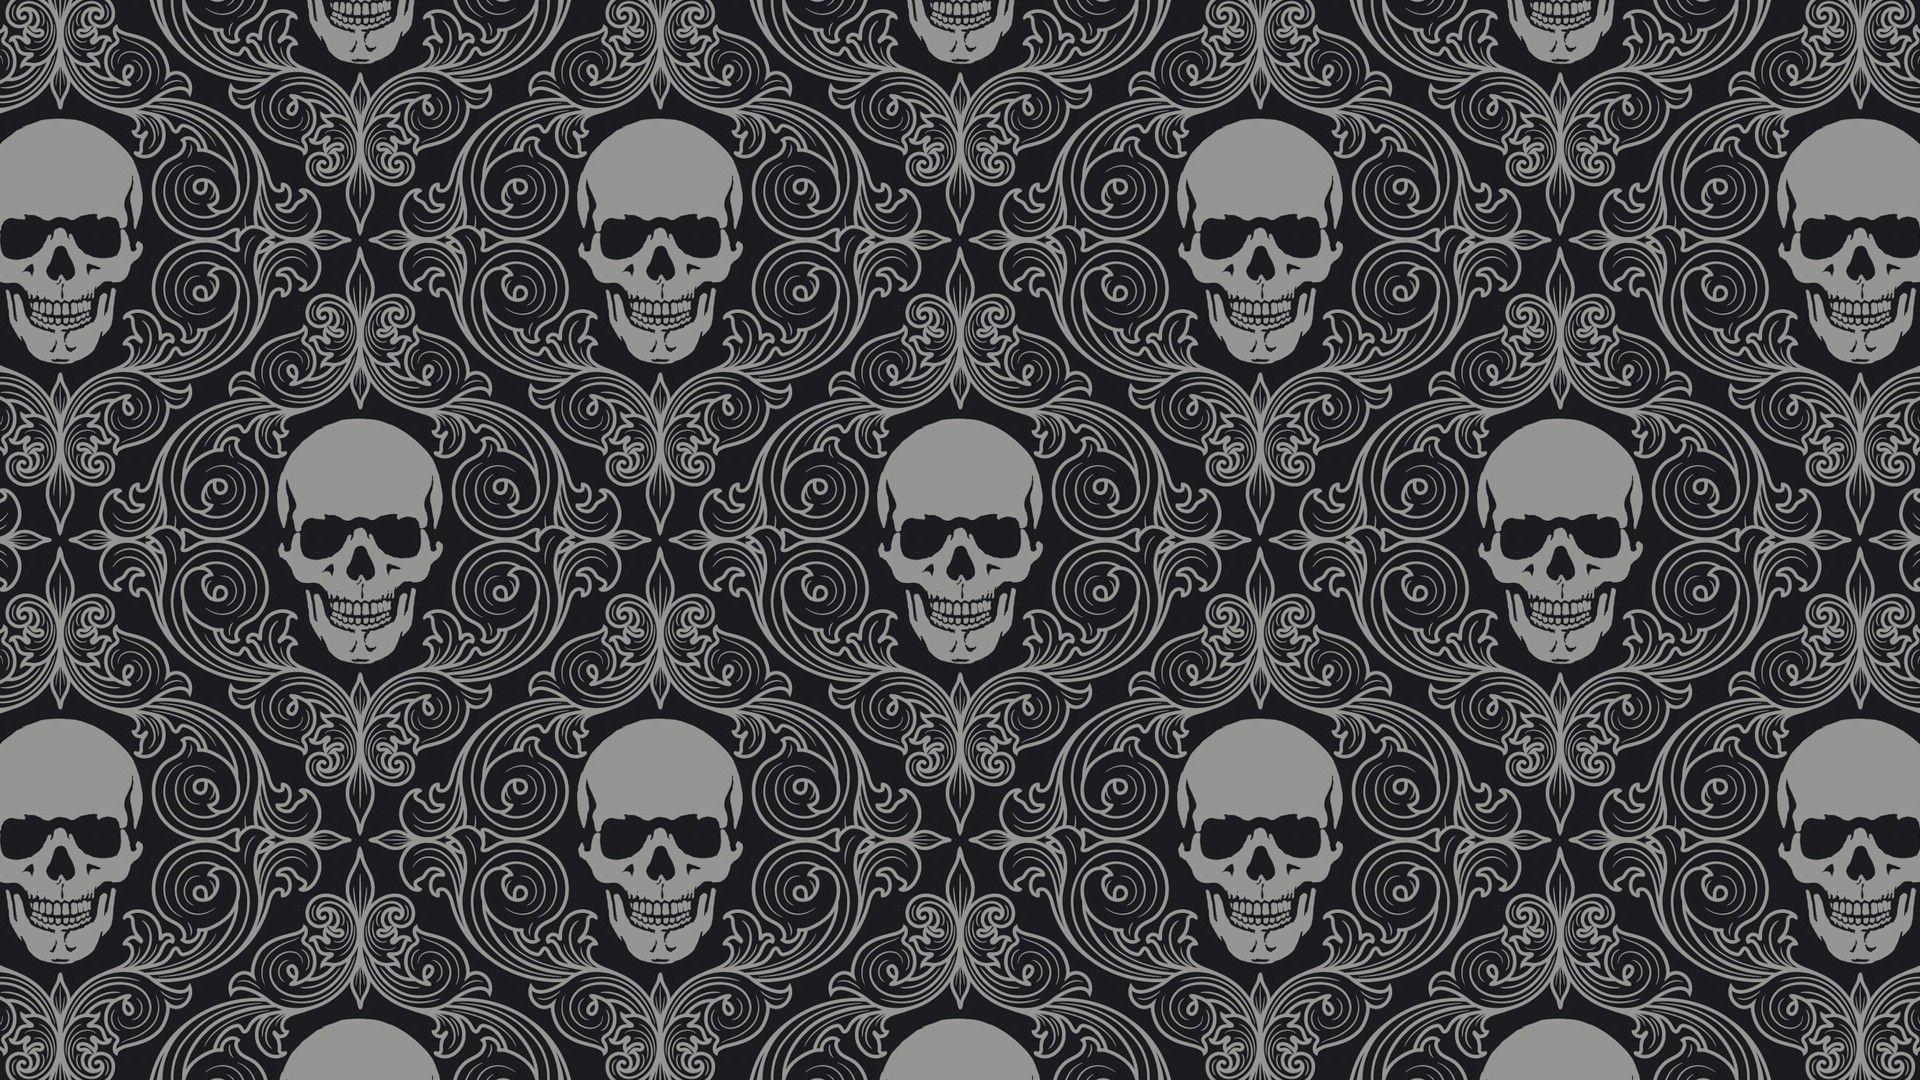 Skull Tiles Background, HD Artist, 4k Wallpaper, Image